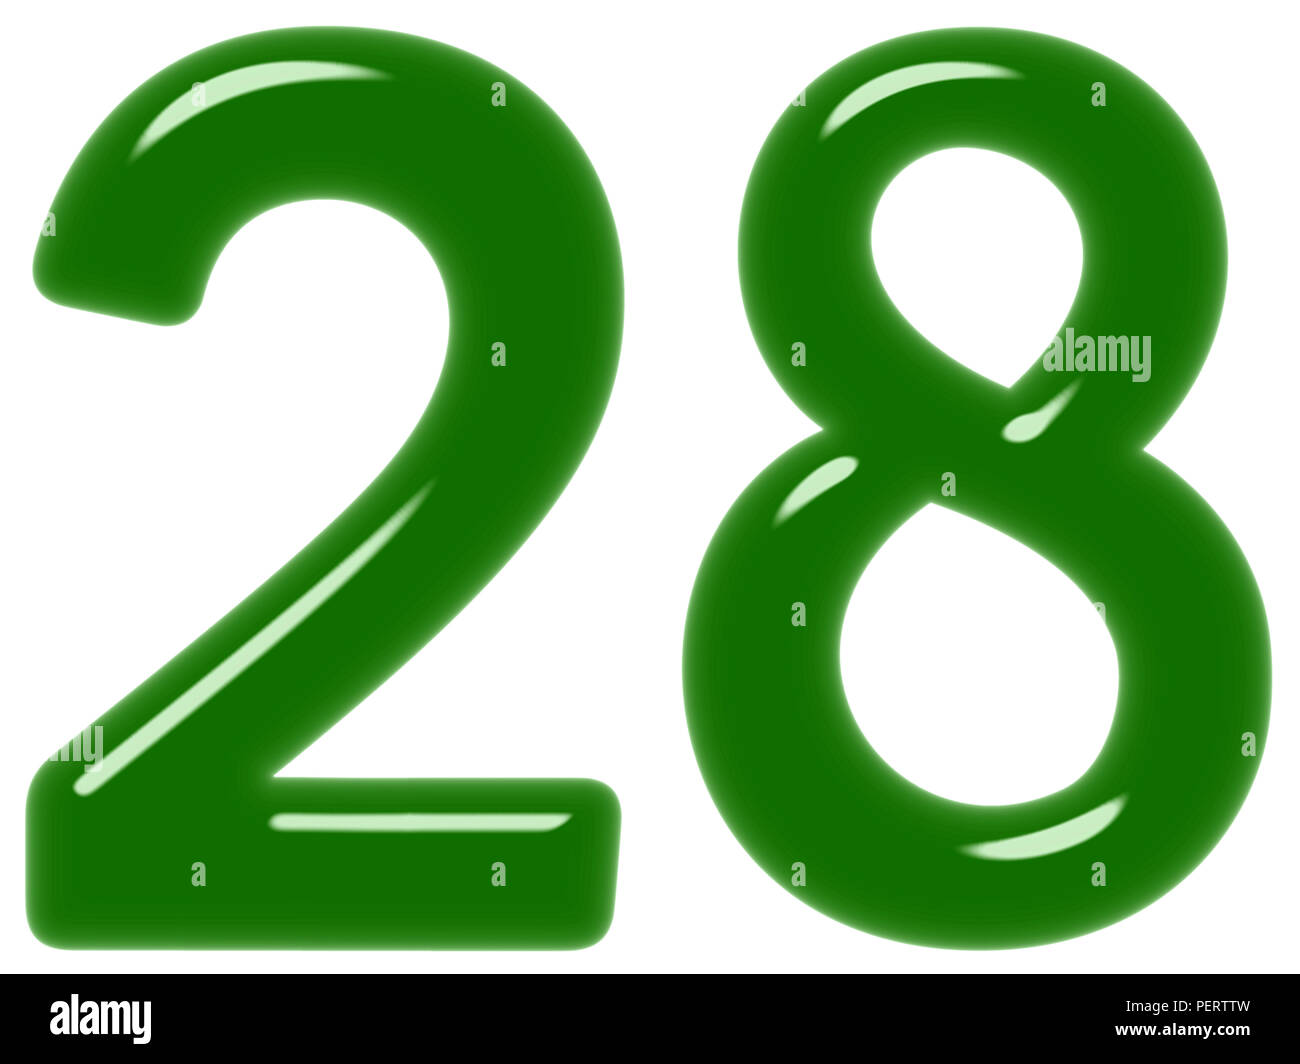 С 15 20 лет 25. Цифра 28. Цифра 28 красивая. Цифра 28 зеленая. Цифра 28 на фоне.